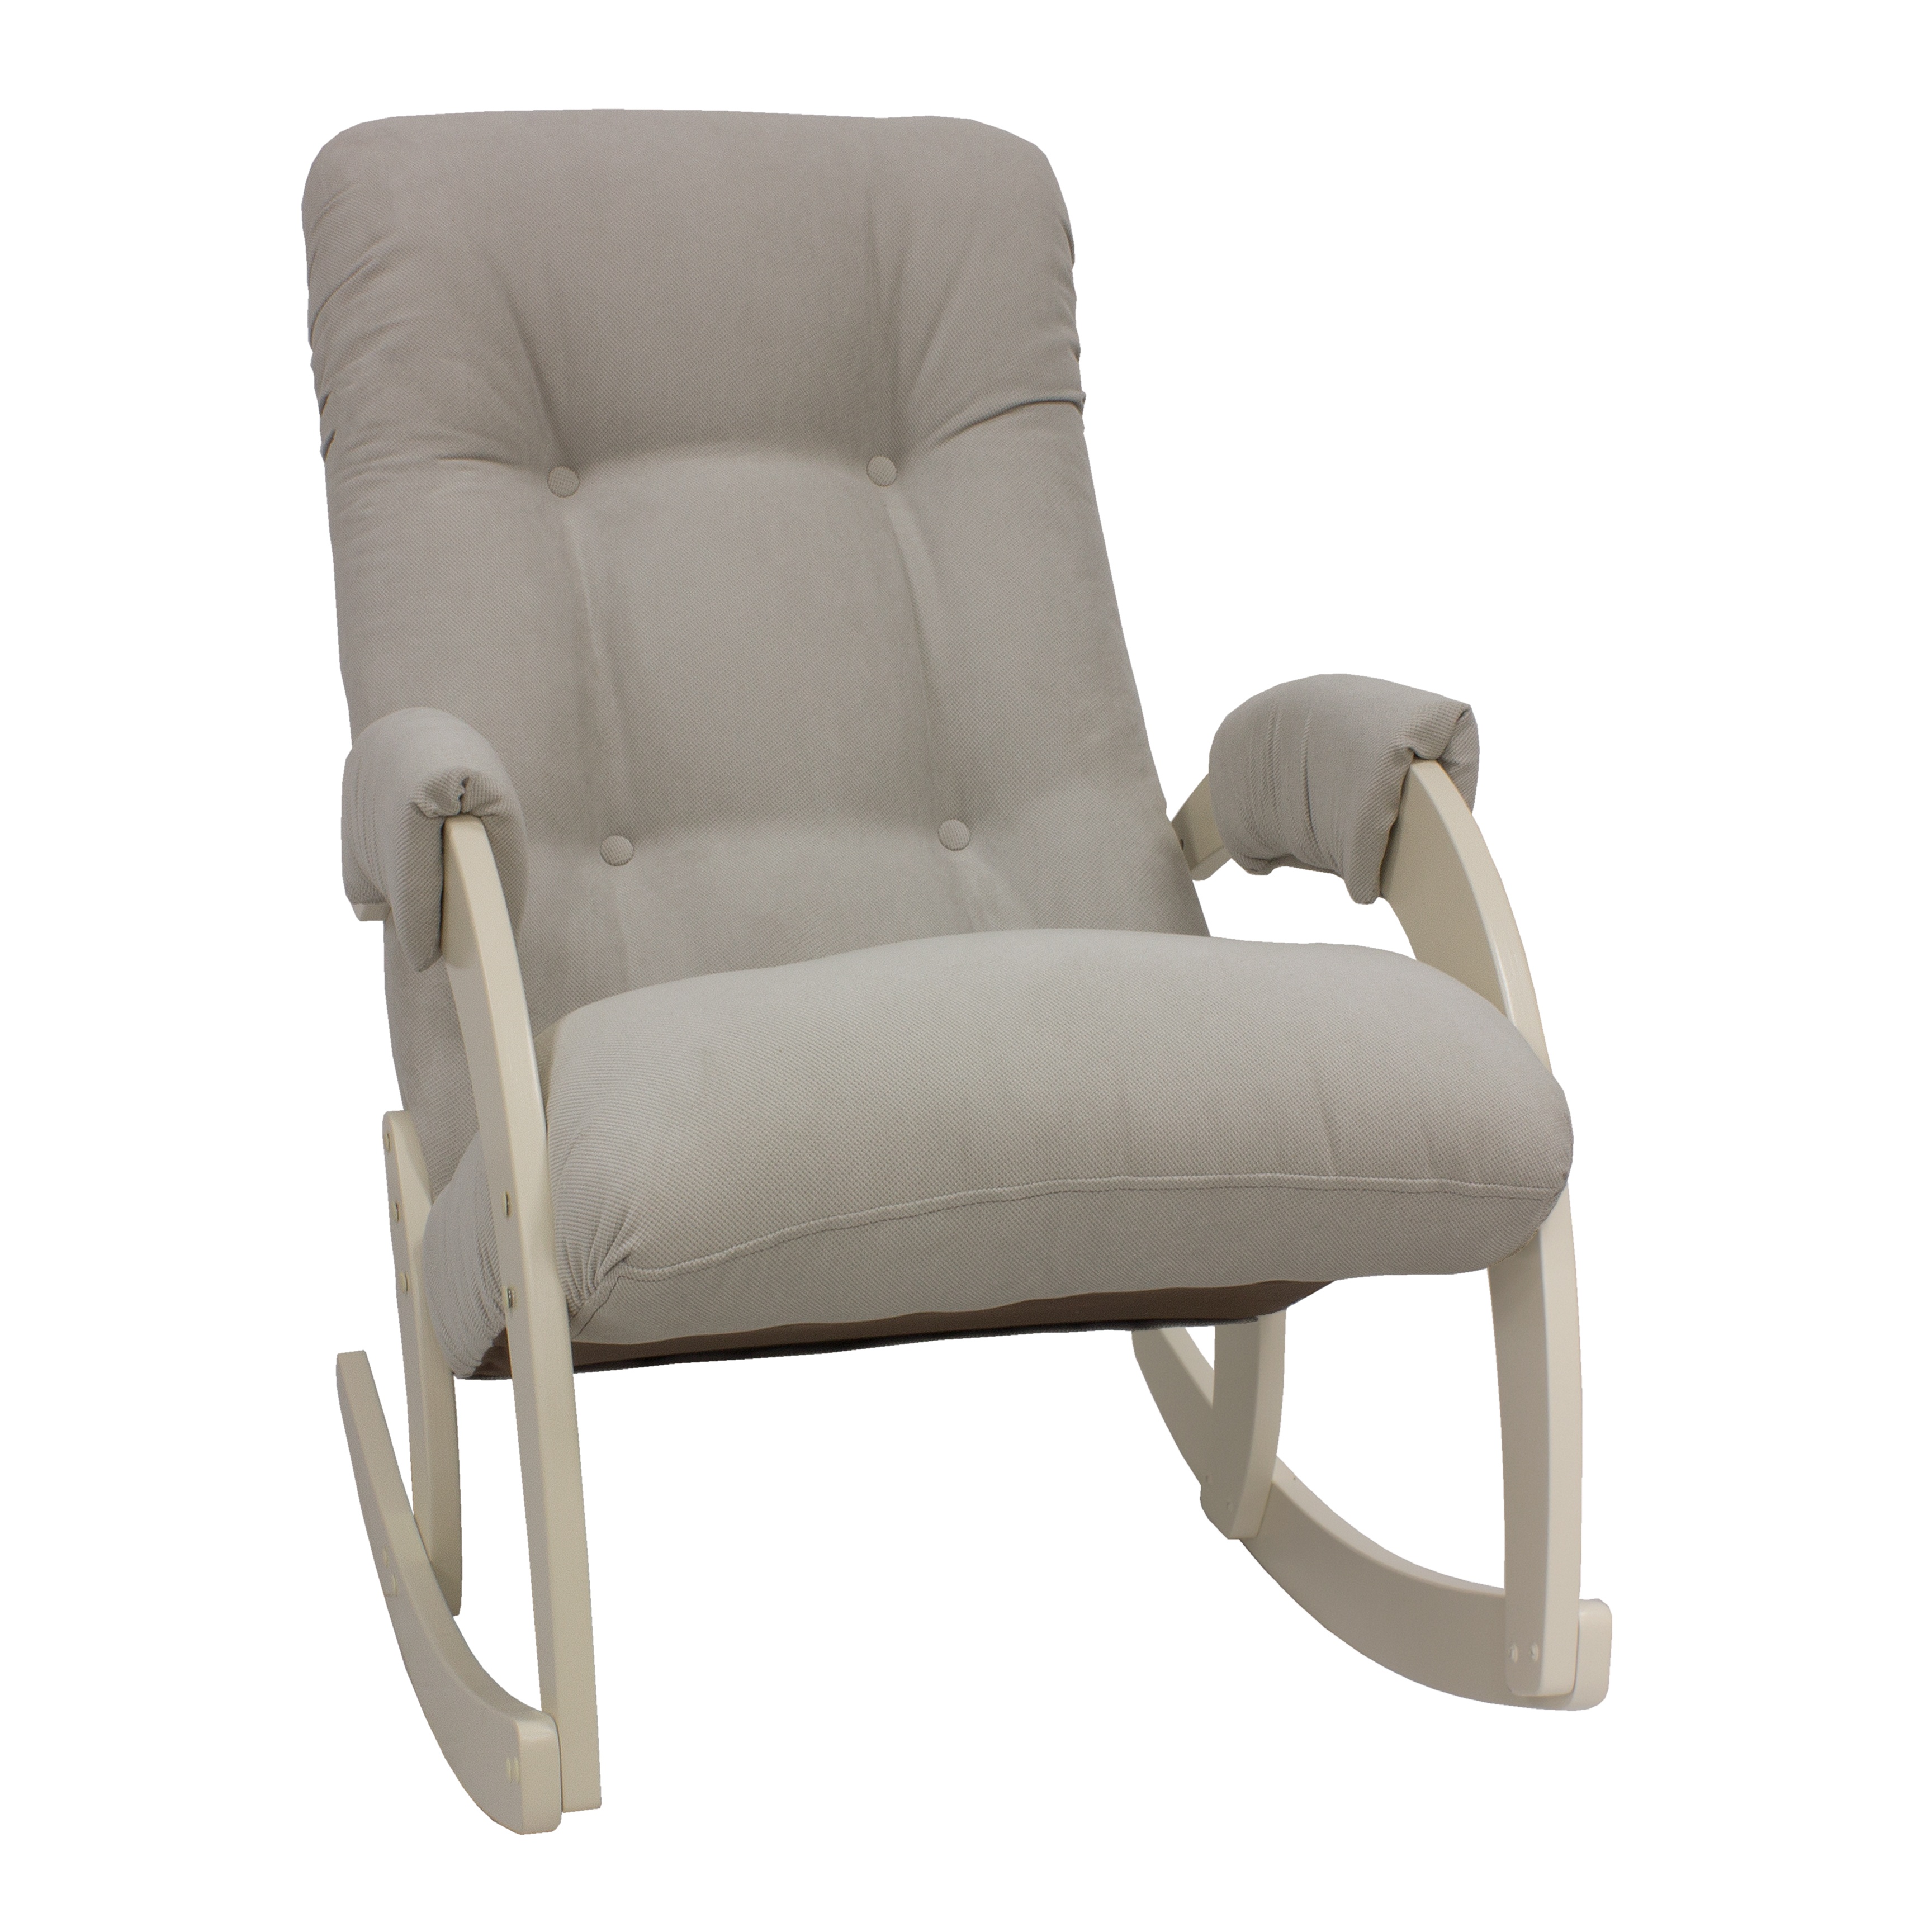 Кресло-качалка verona комфорт серый 60x87x103 см.